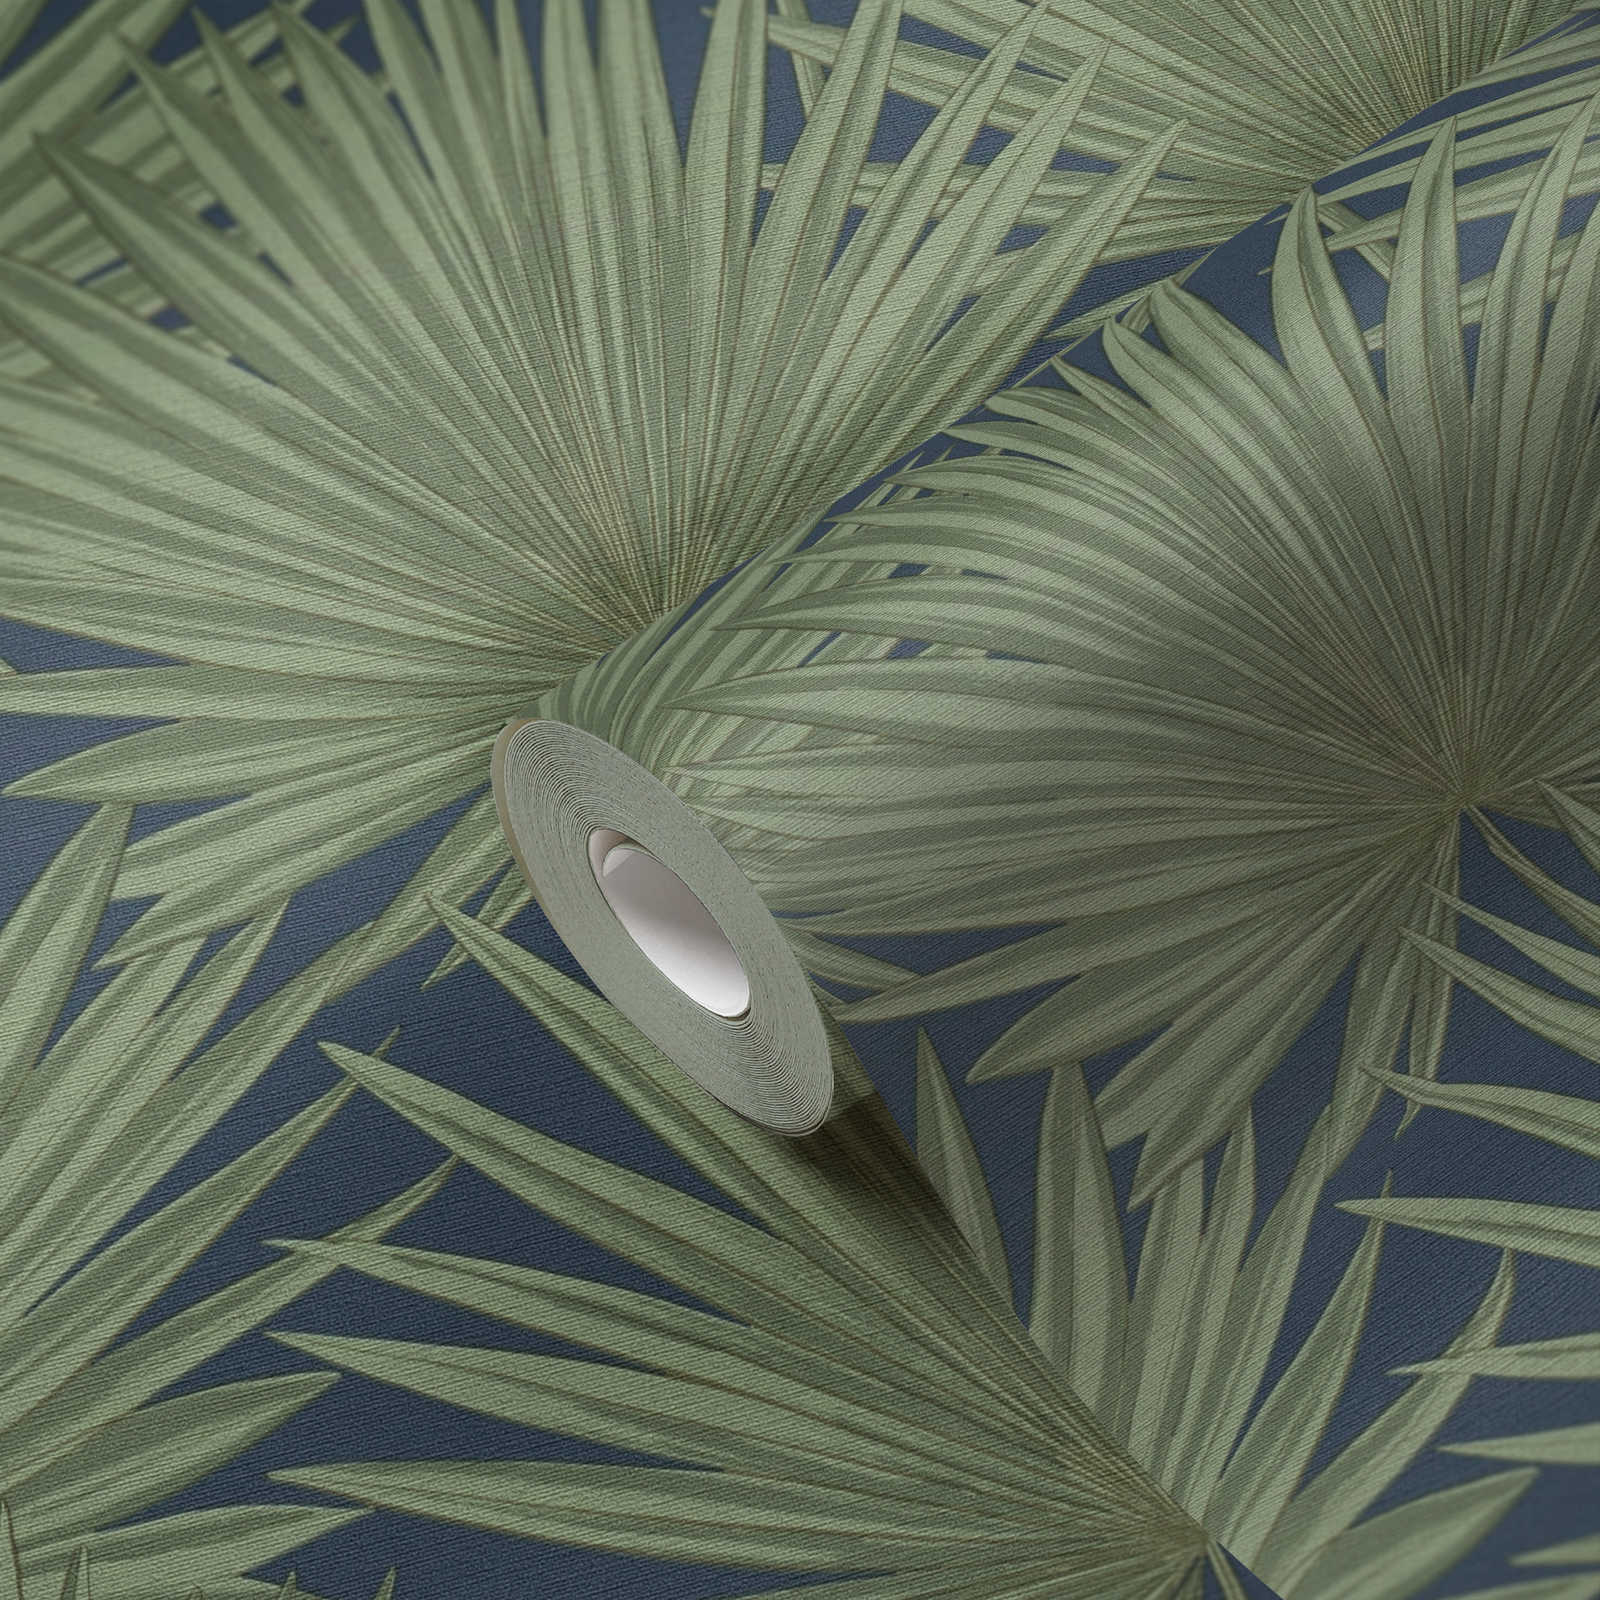             Vliesbehang met palmbladeren op een subtiele achtergrond - groen, blauw
        